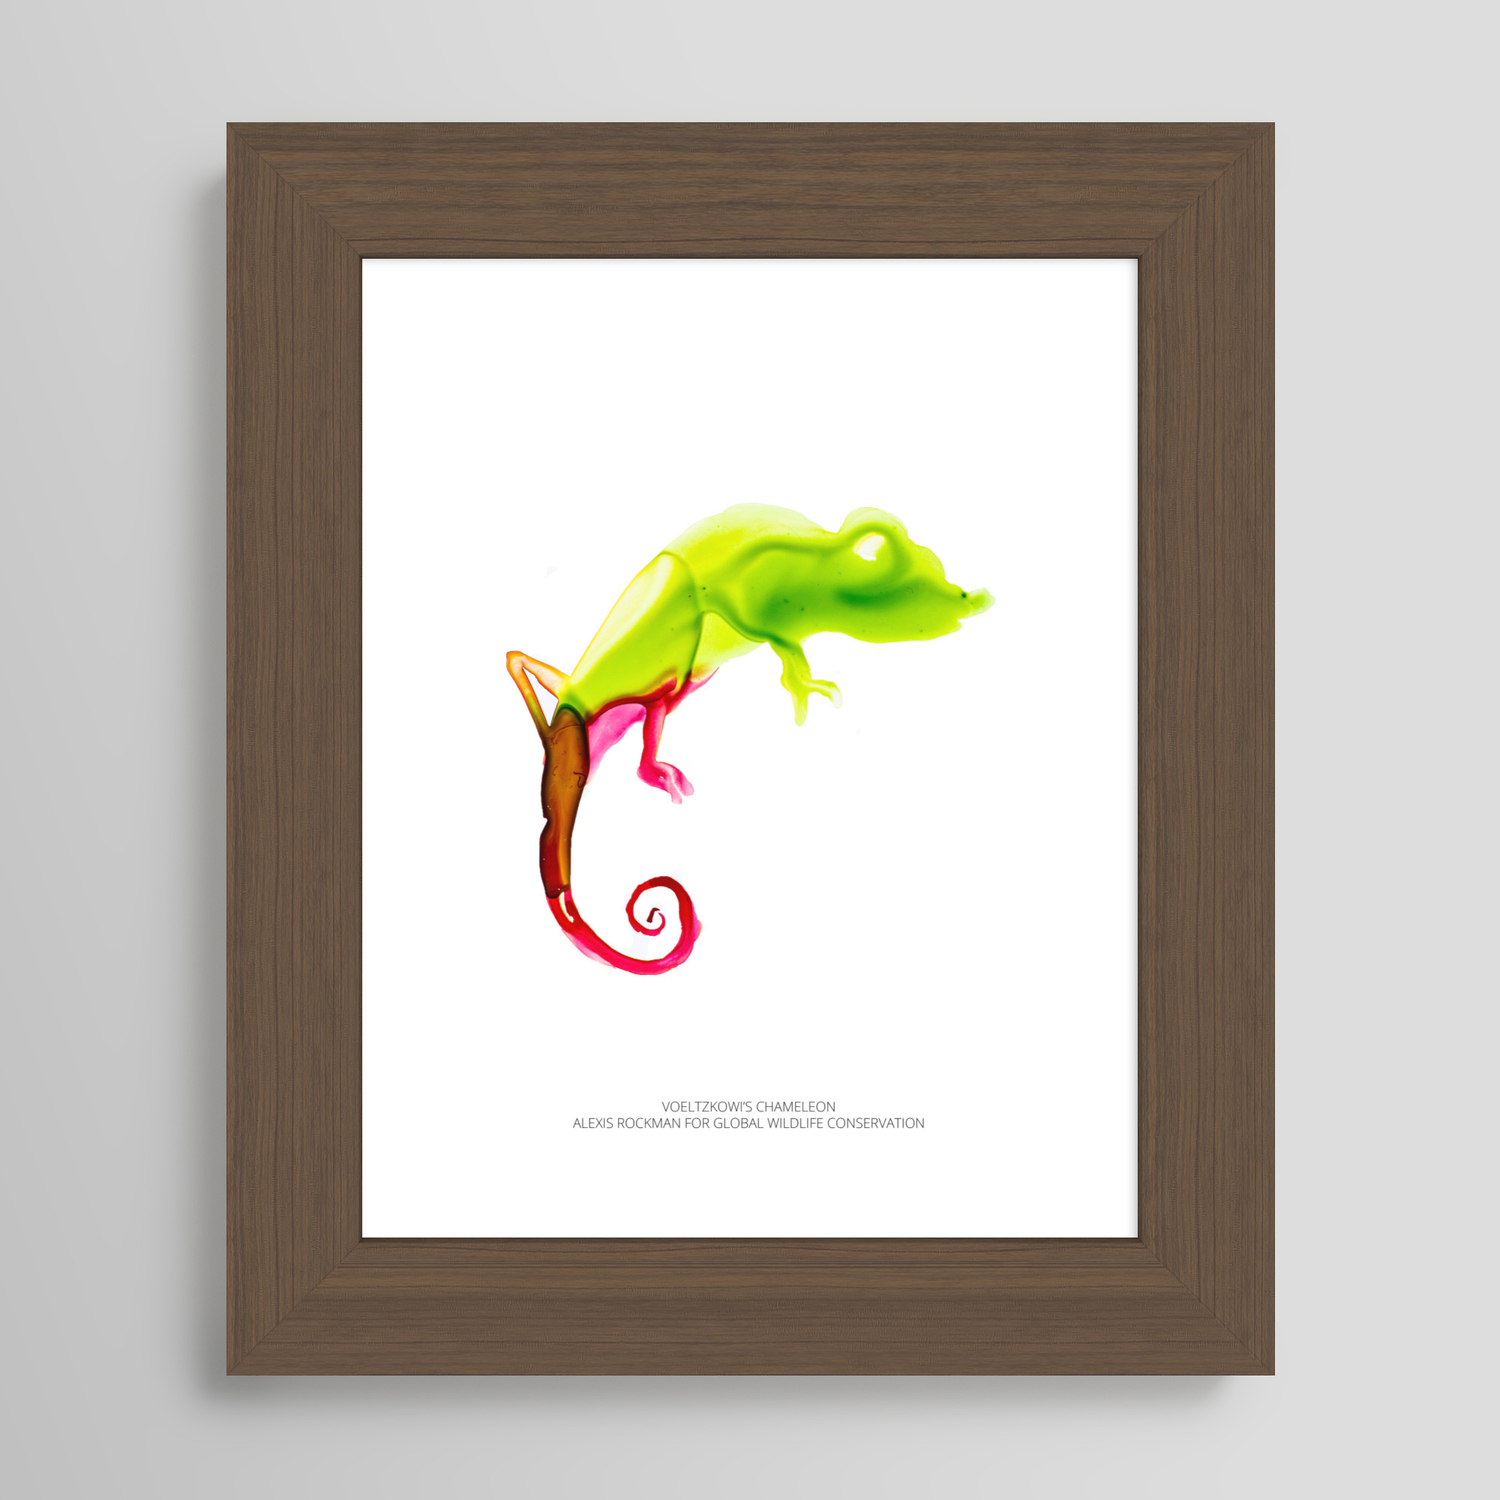 Voeltzkow's Chameleon Framed Art Print by Global Wildlife Conservation |  Society6